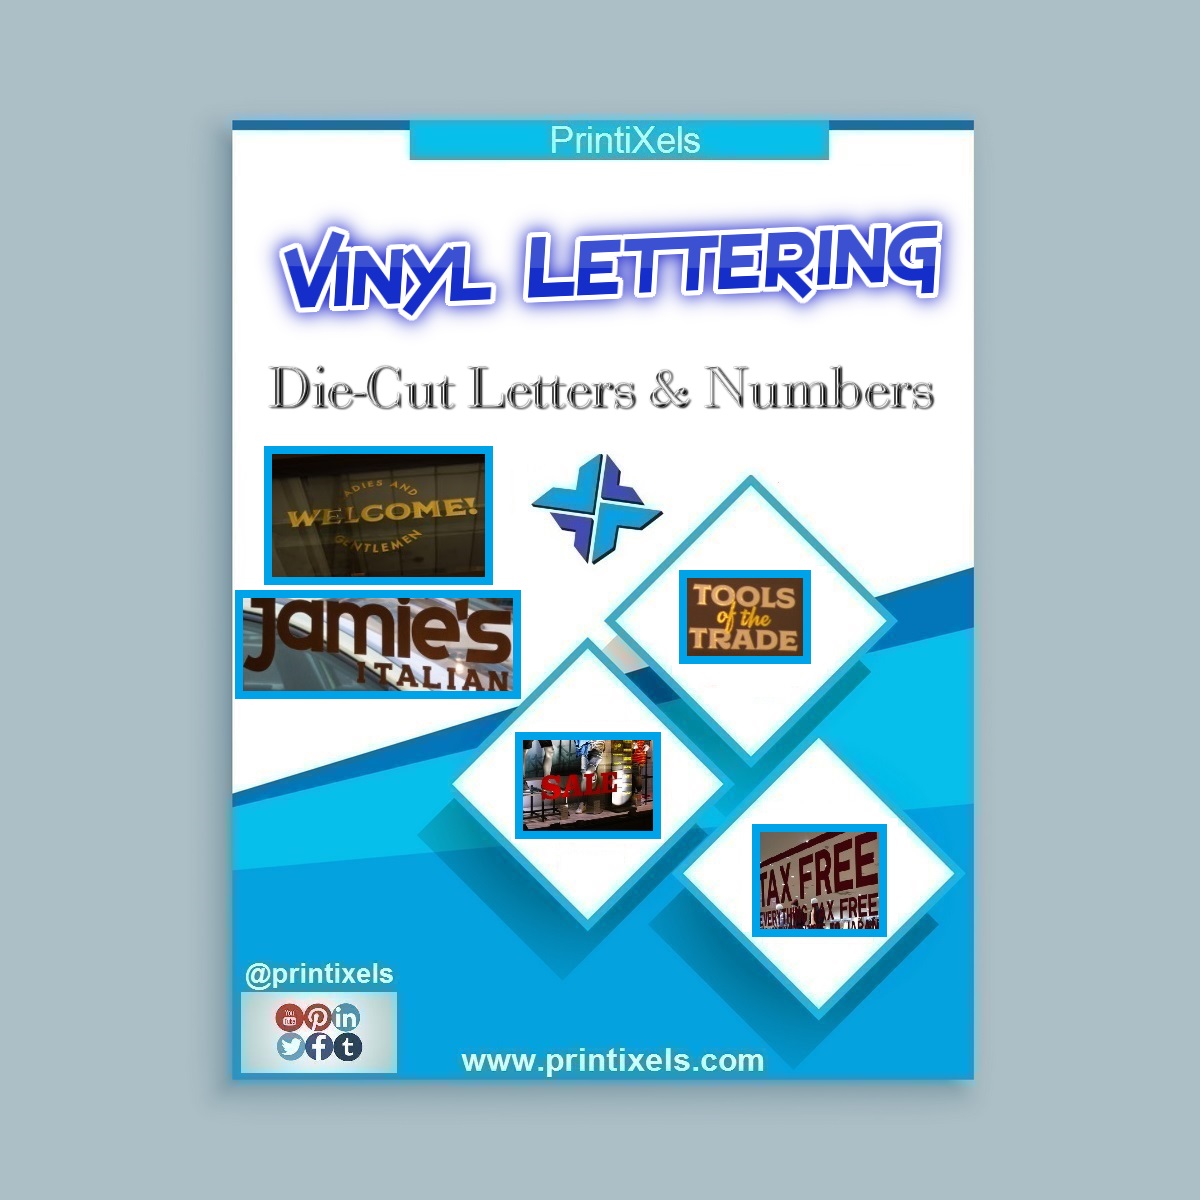 Vinyl Lettering Stickers, Die-Cut Letters & Numbers